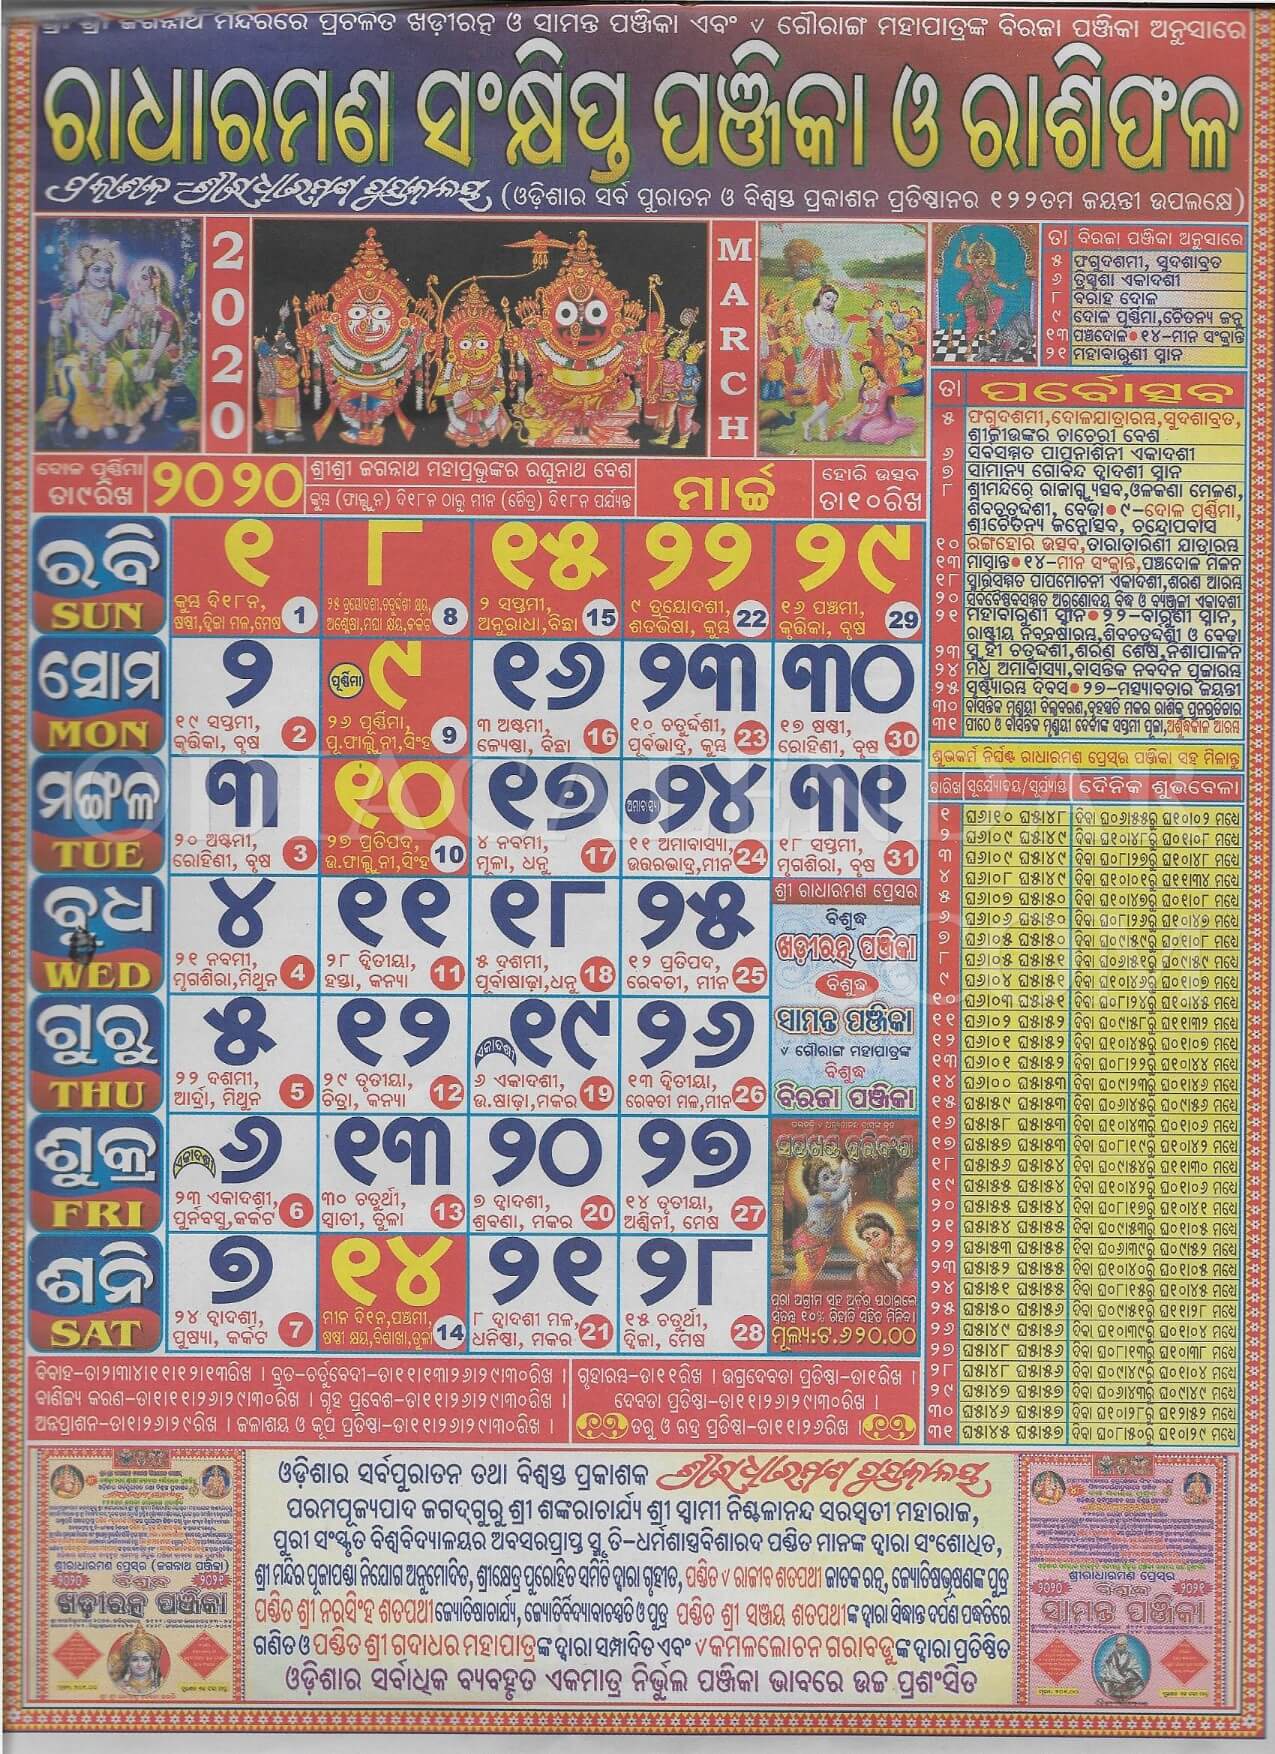 radharaman calendar march 2020